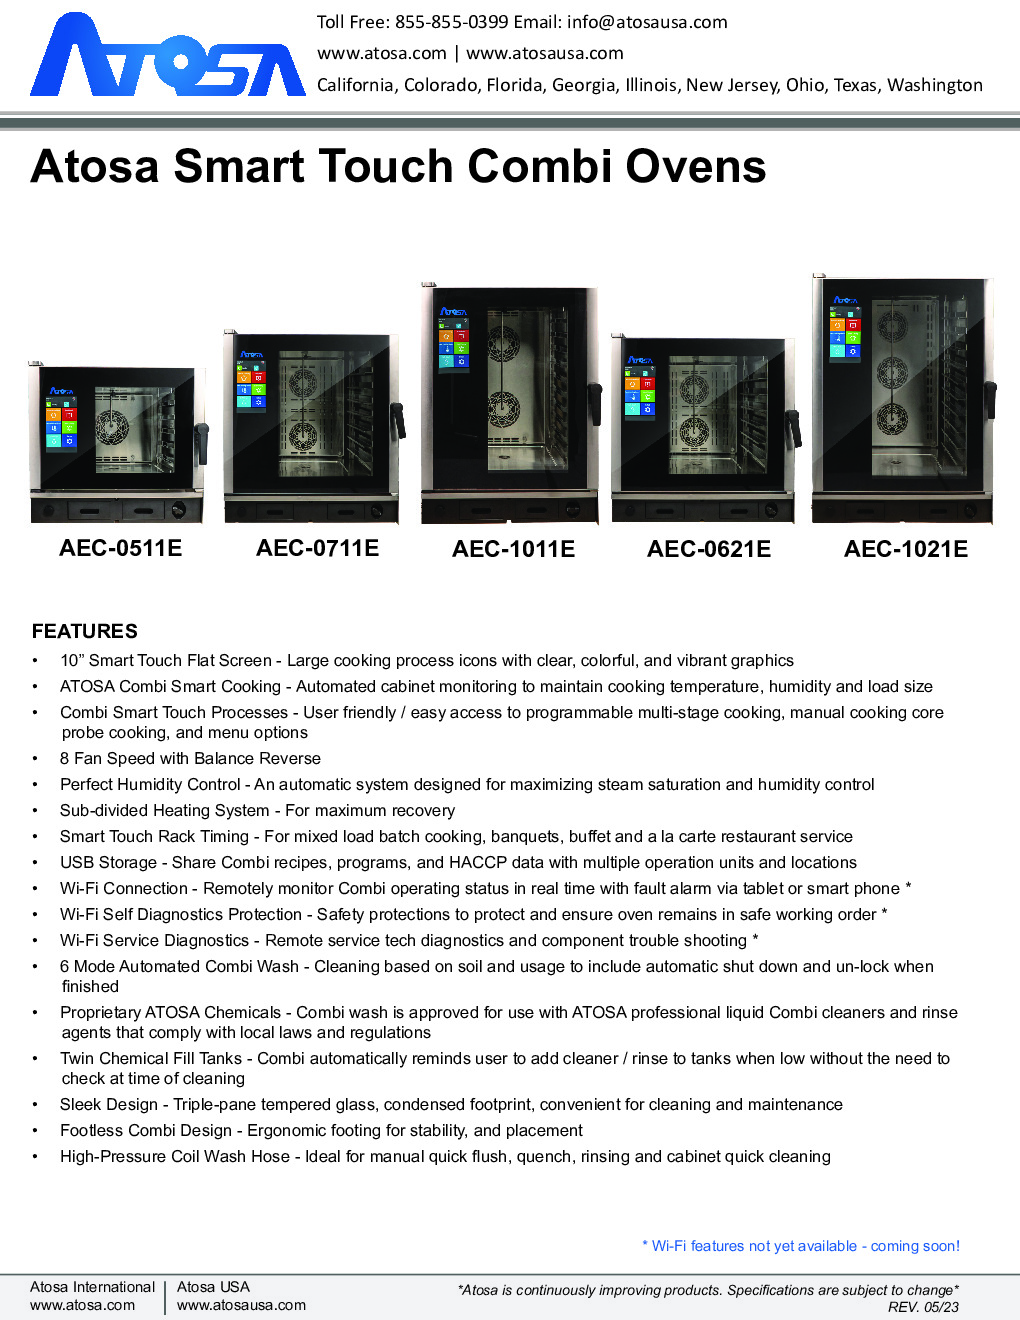 Atosa USA AEC-0711 E Electric Combi Oven